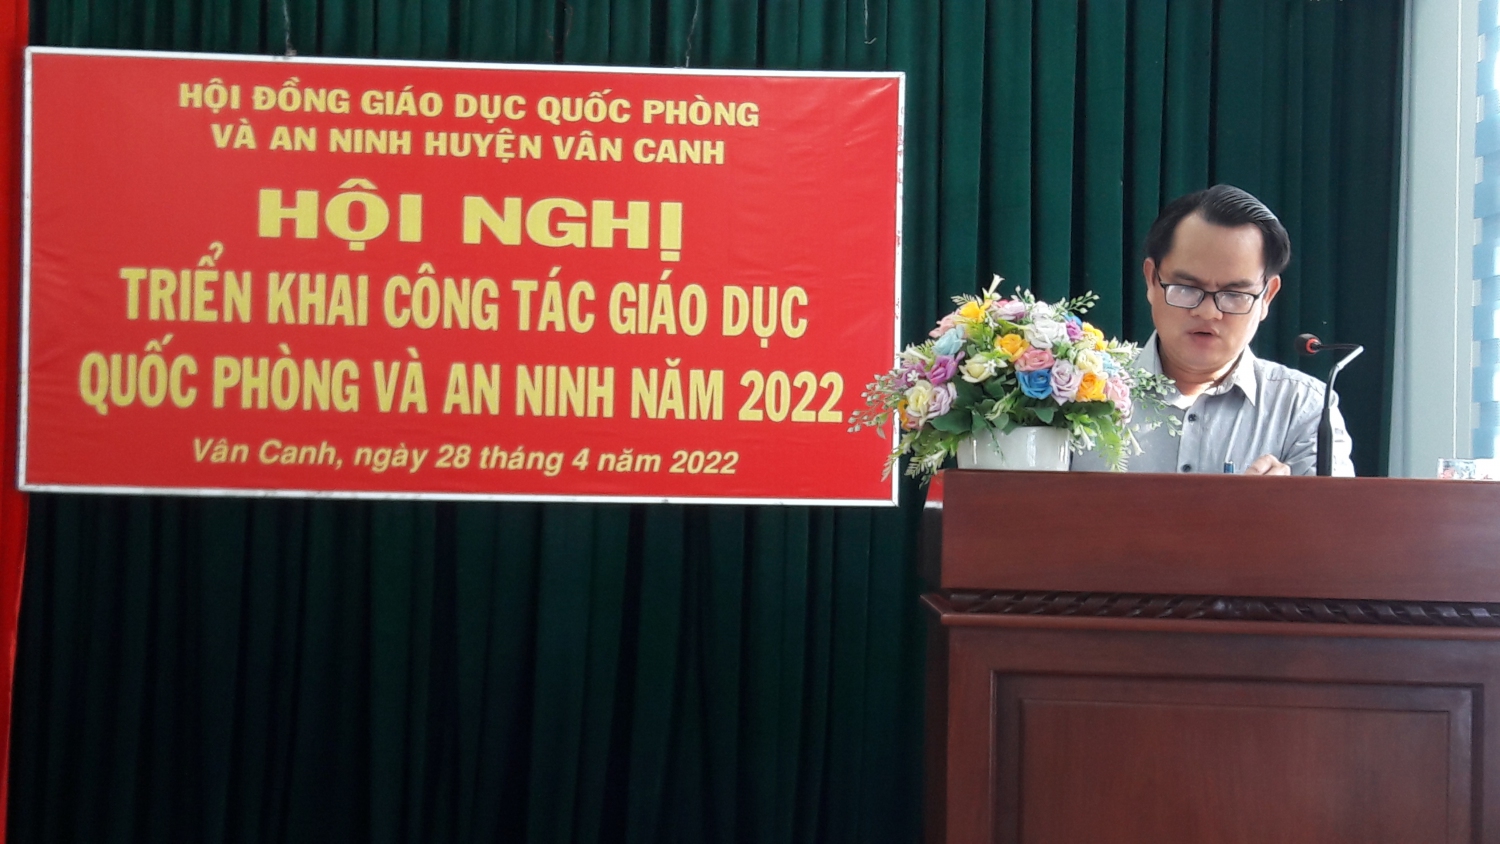 Ông Nguyễn Xuân Việt, phó chủ tịch UBND huyện , chủ tịch Hội đồng giáo dục quốc phòng và an ninh huyện phát biểu chỉ đạo Hội nghị